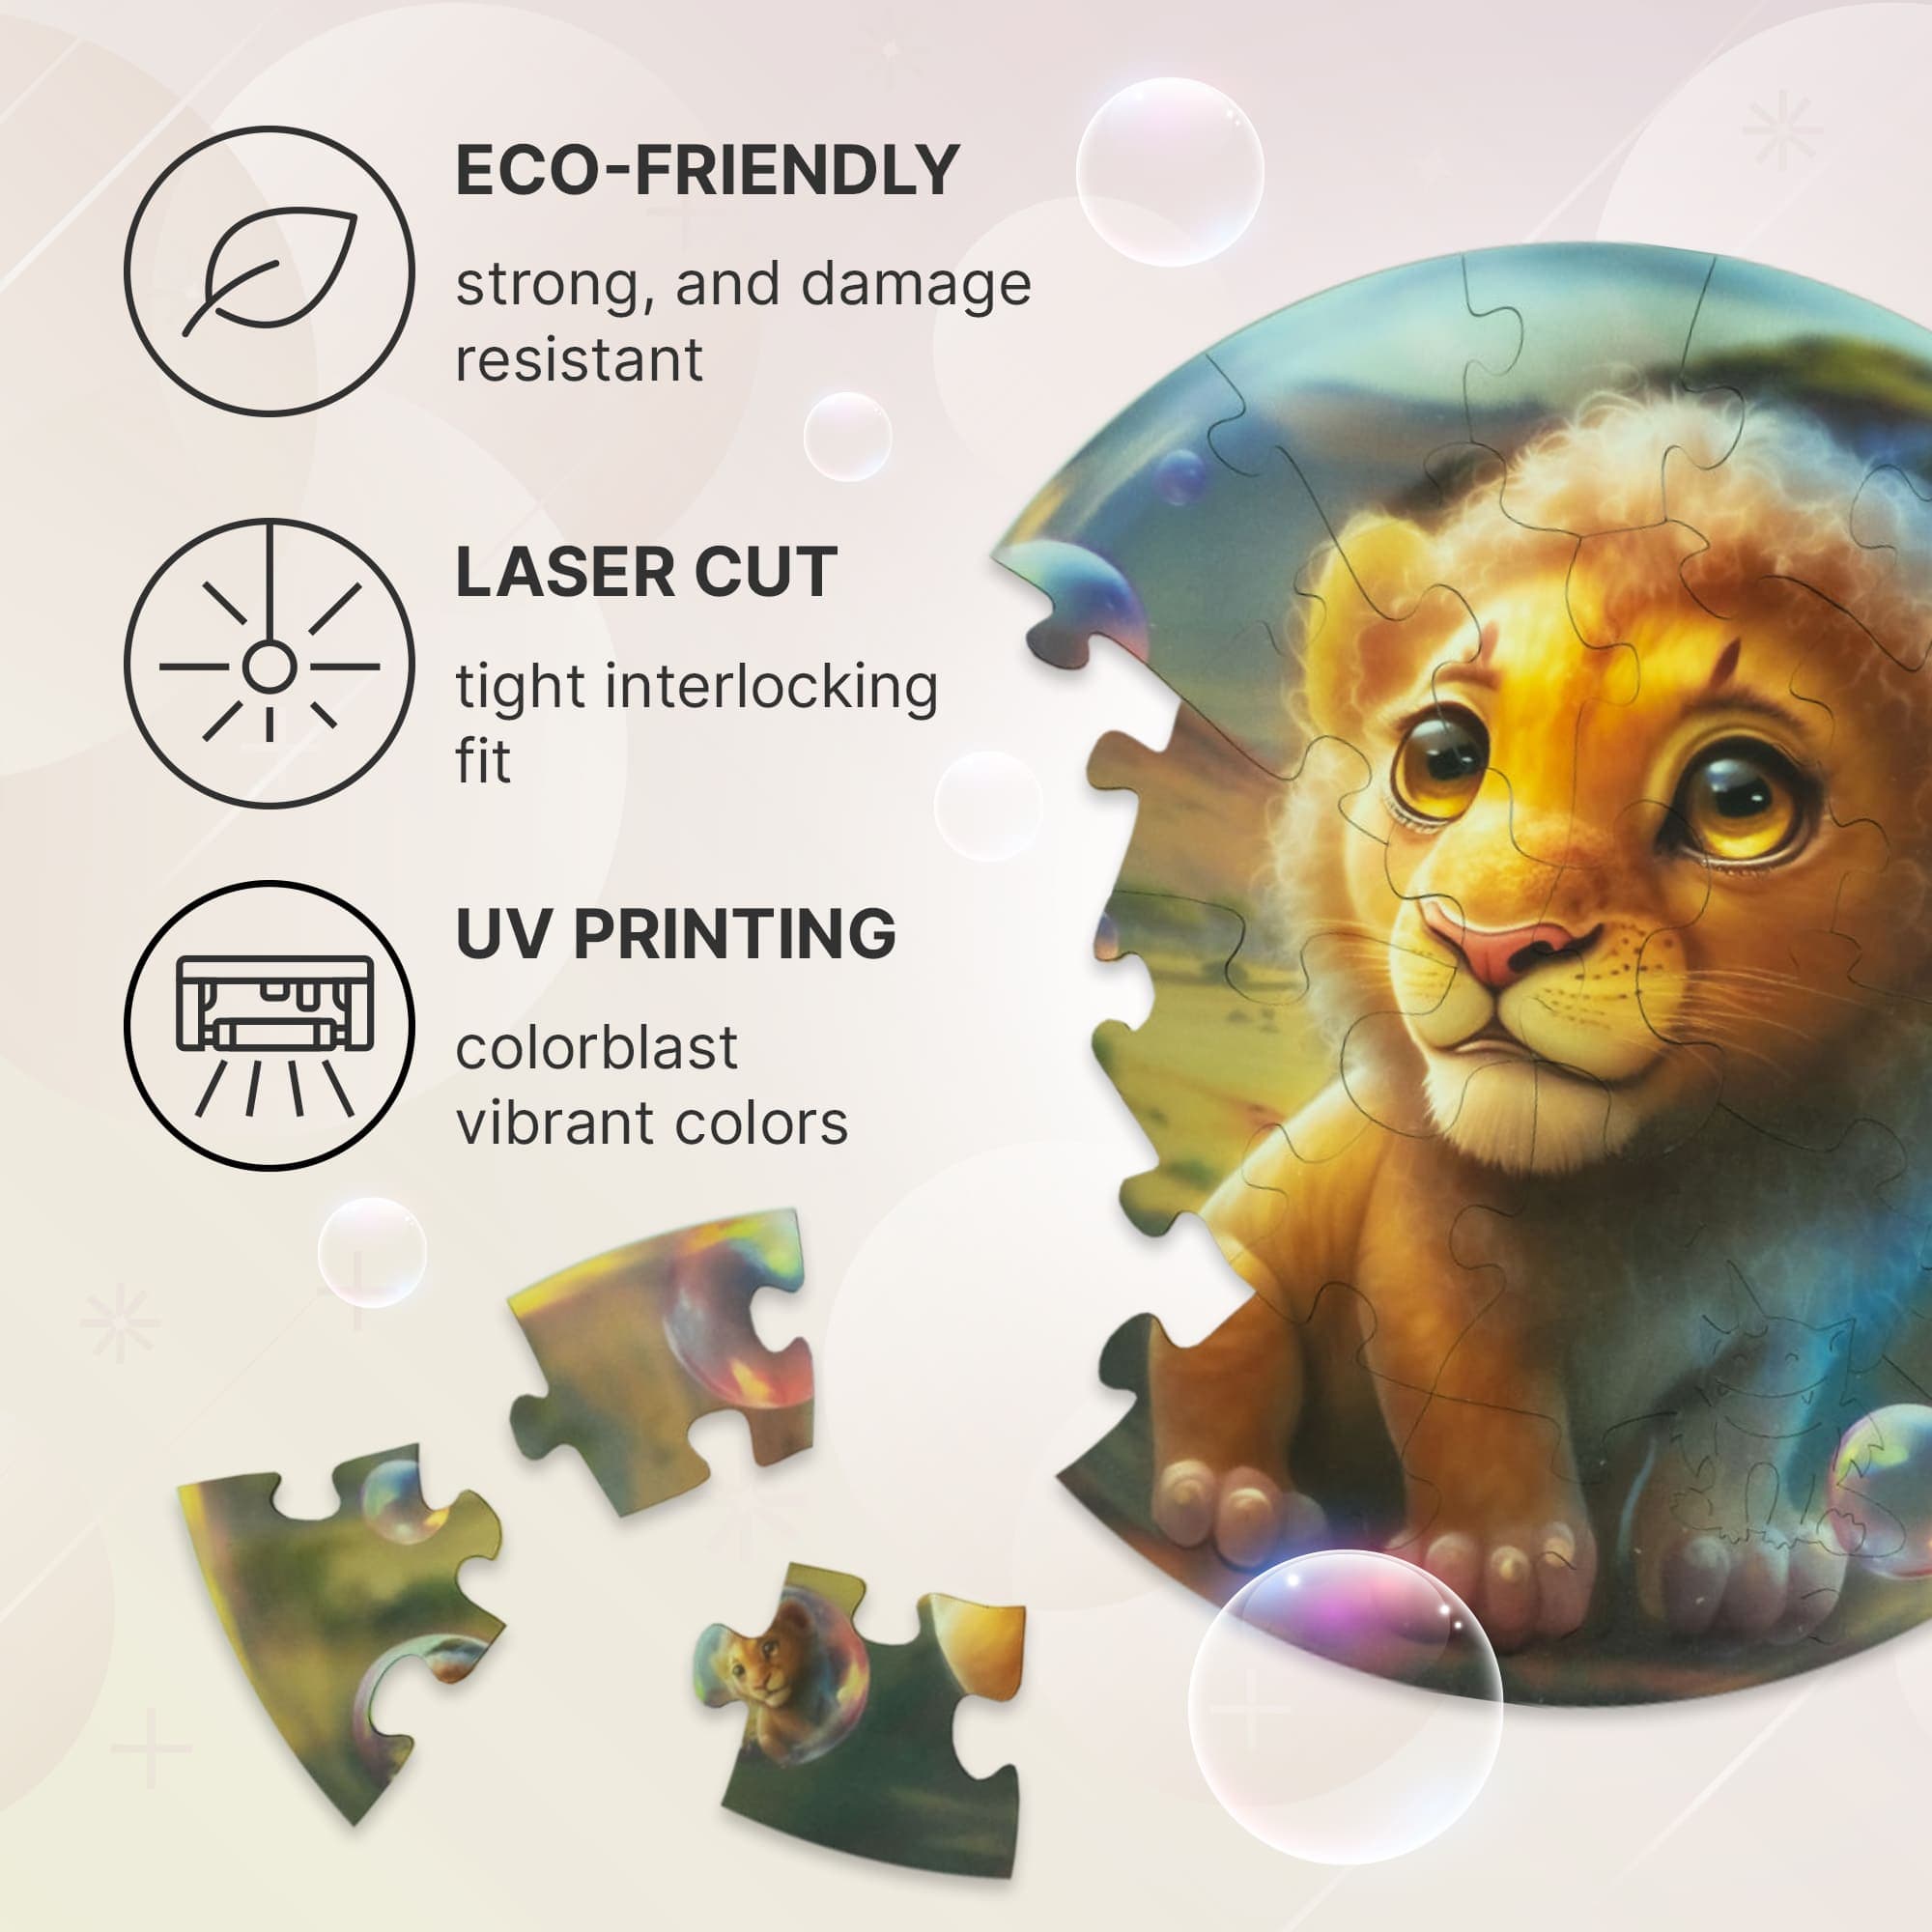 Unidragon Puzzle One Size — 9.8×9.8" — 30 pcs Bubblezz Lion